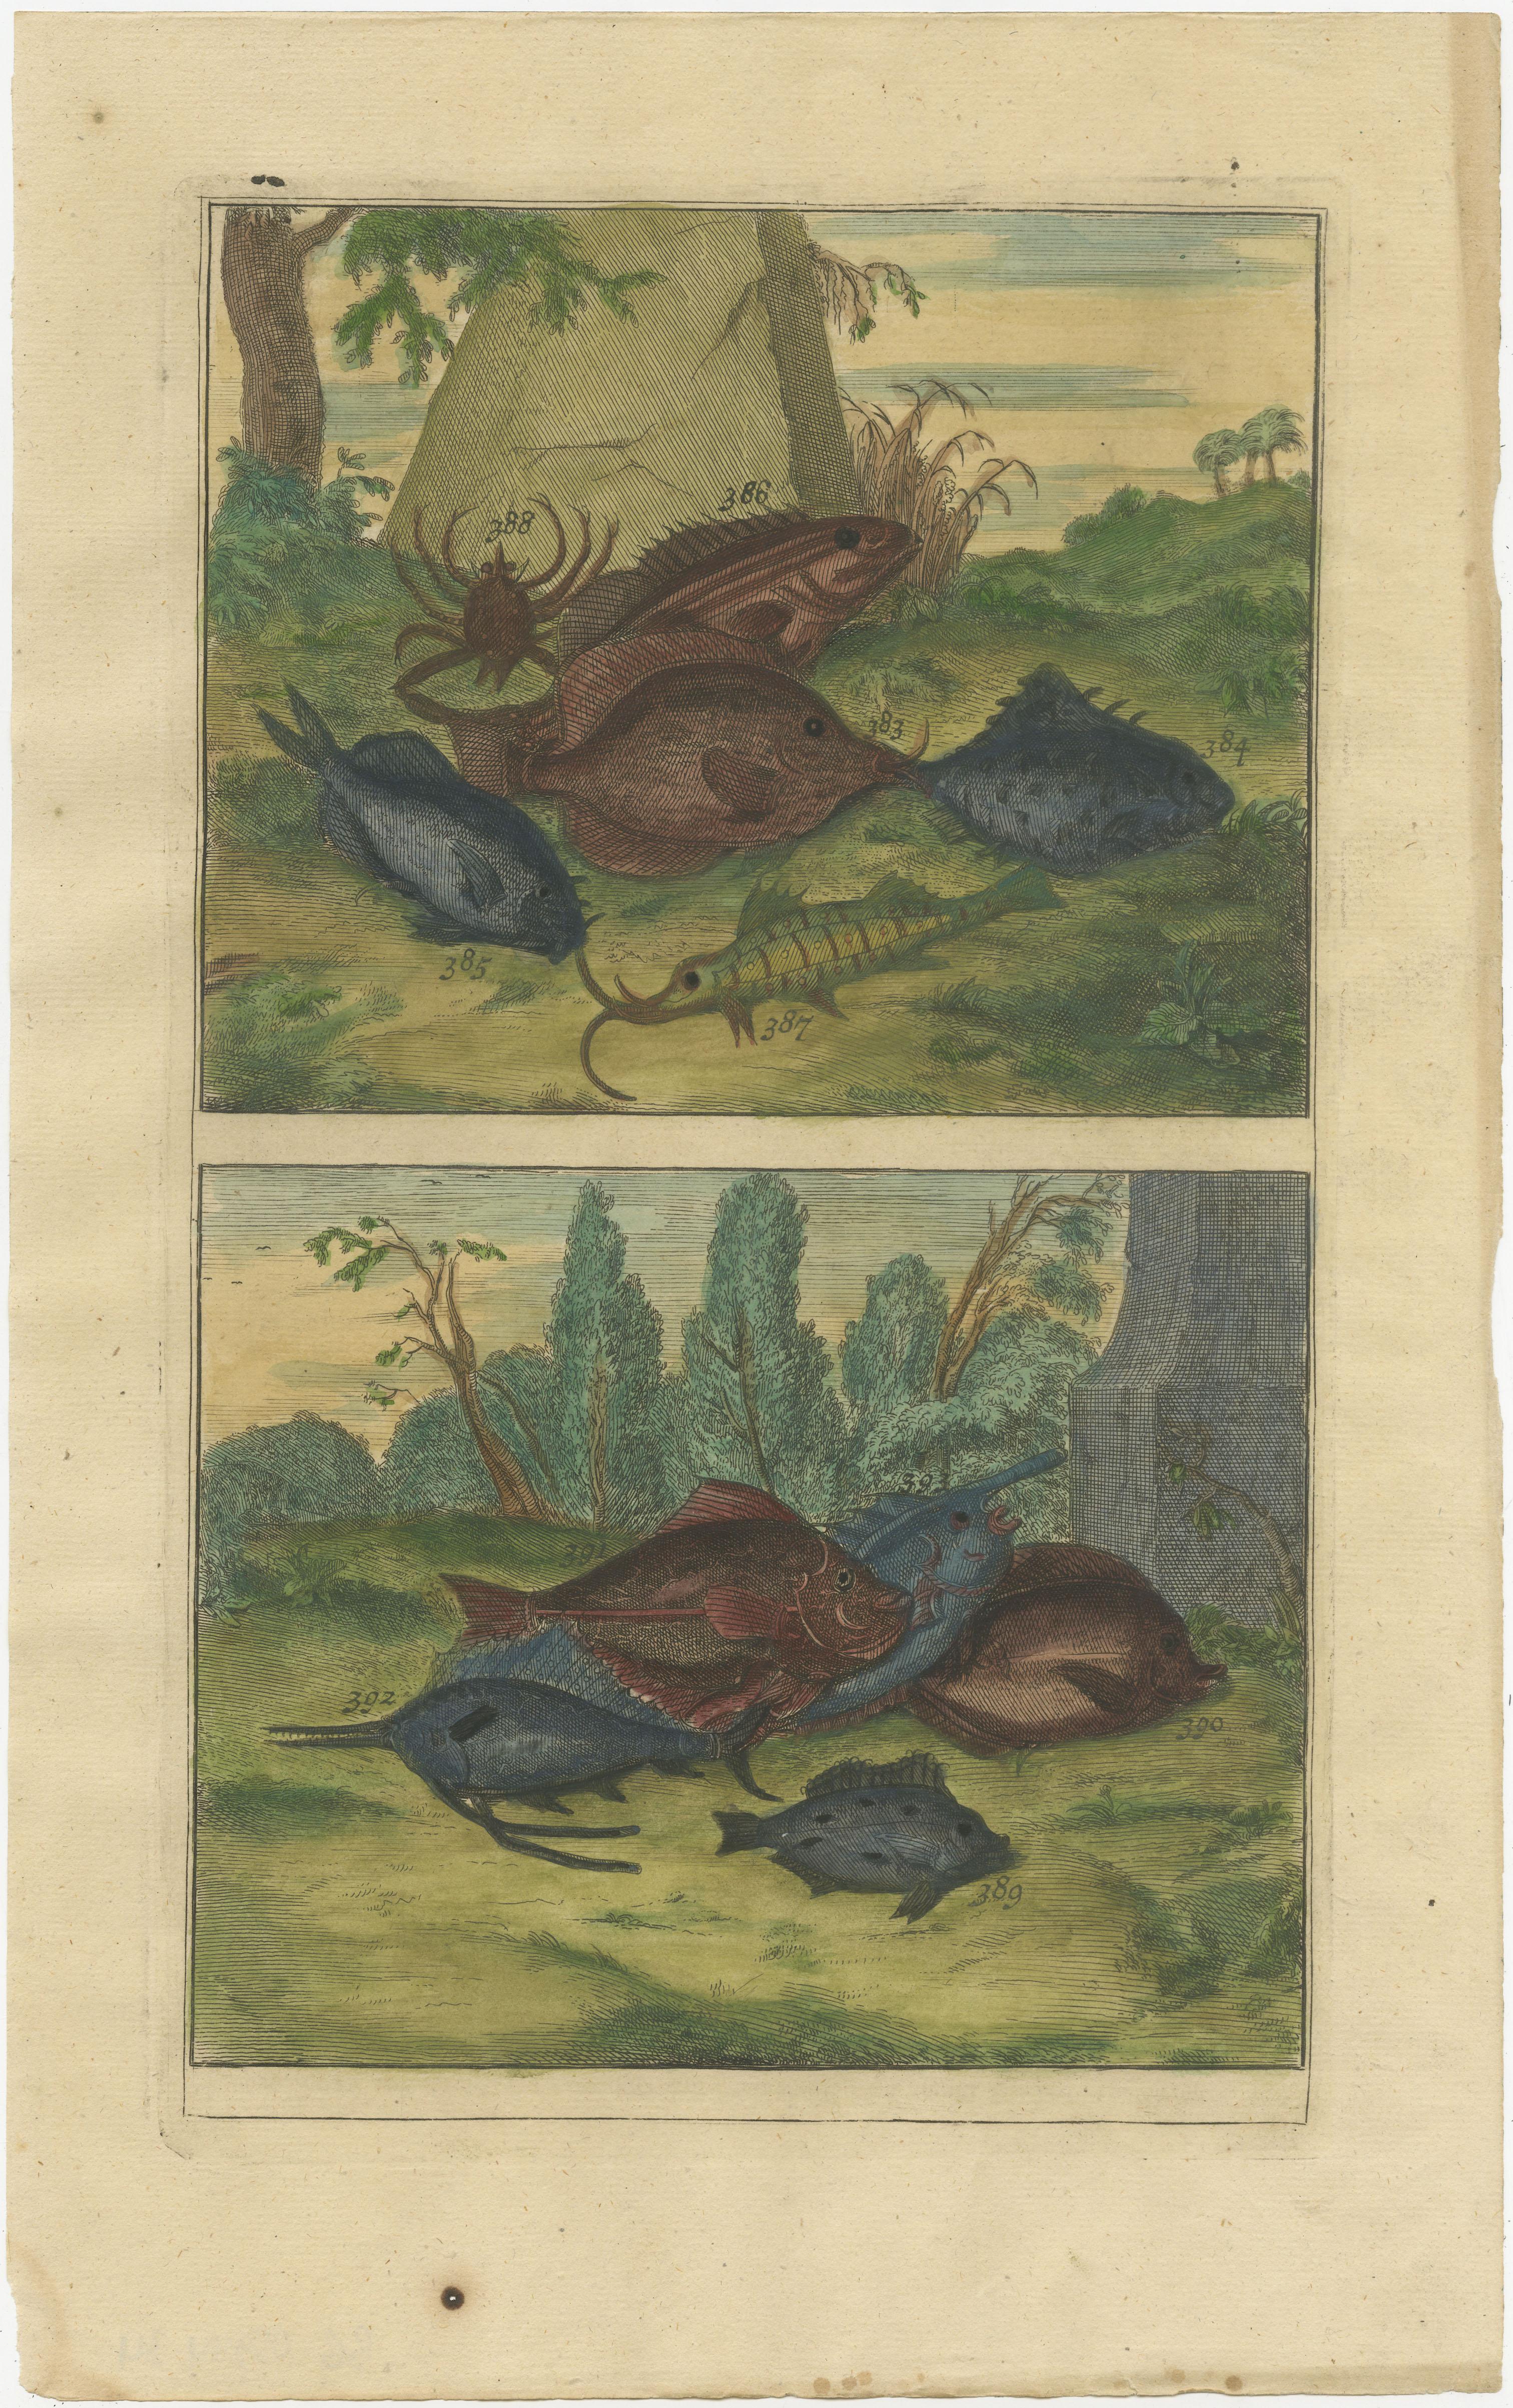 Ensemble de douze gravures anciennes de divers poissons et crustacés. Ces impressions proviennent de 'Oud en Nieuw Oost-Indiën' de F. Valentijn.

François Valentyn ou Valentijn (17 avril 1666 - 6 août 1727) était un pasteur calviniste néerlandais,